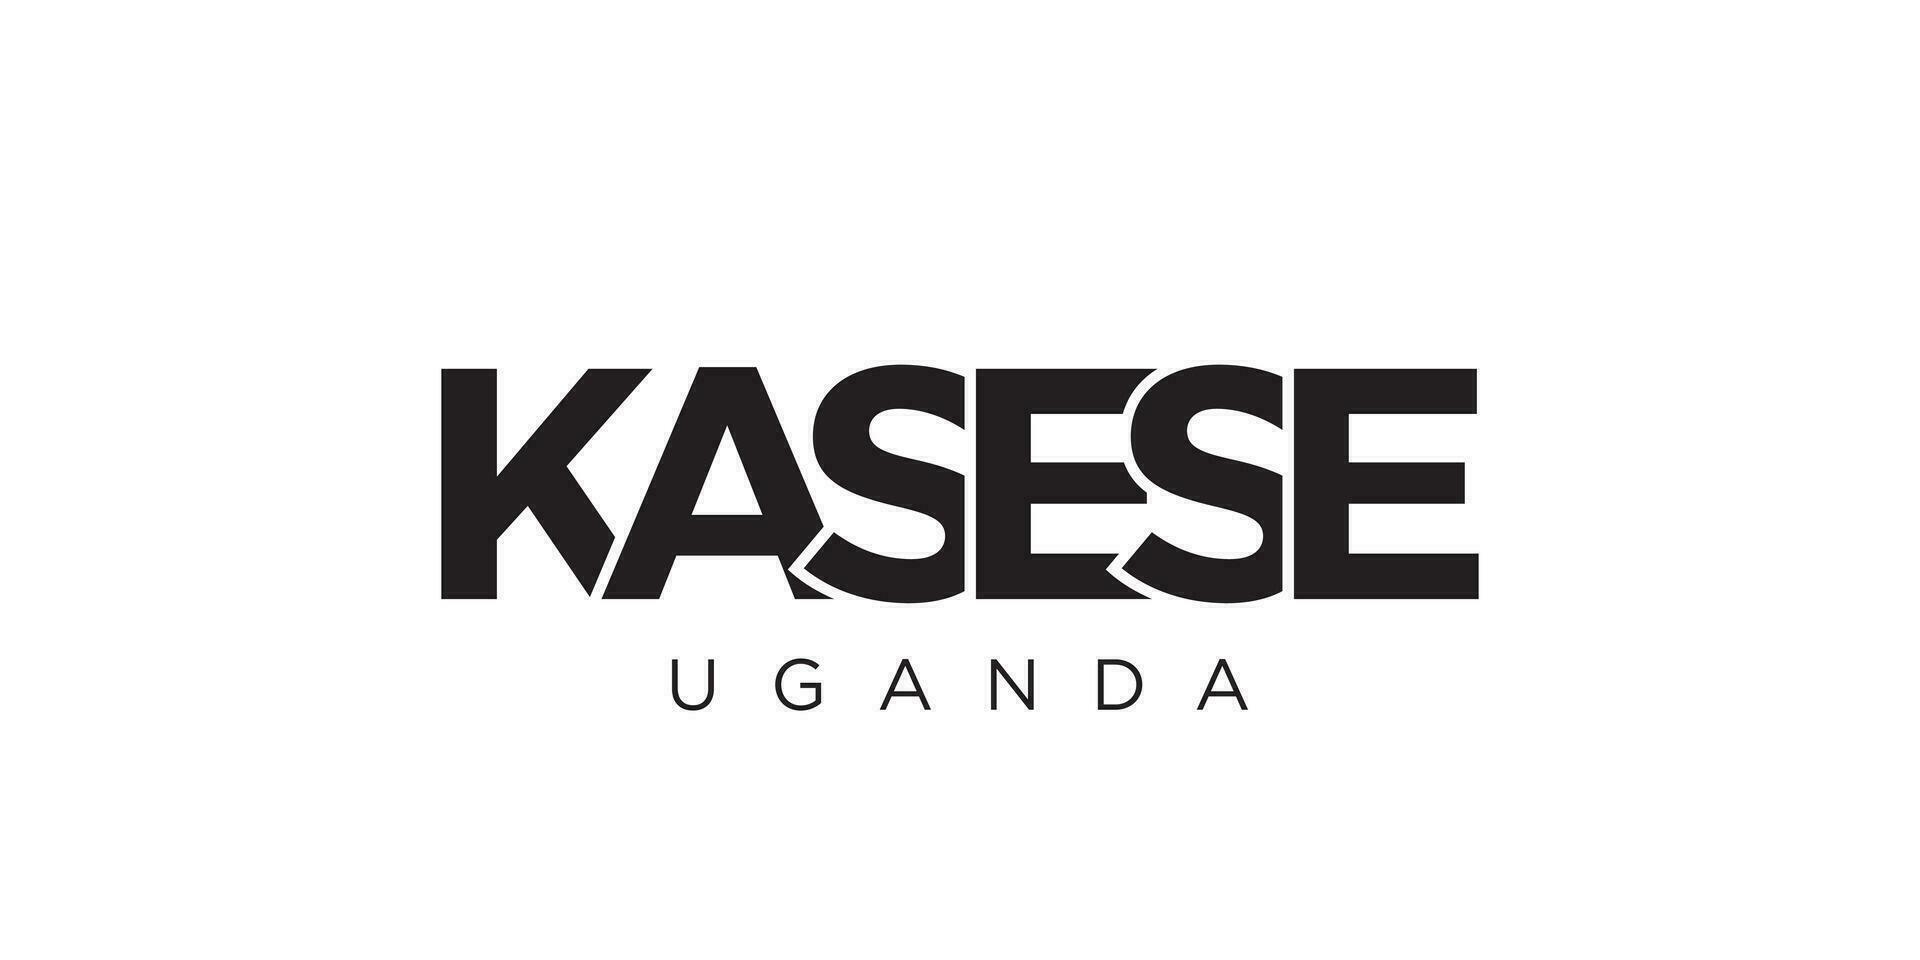 kasese i de uganda emblem. de design funktioner en geometrisk stil, vektor illustration med djärv typografi i en modern font. de grafisk slogan text.